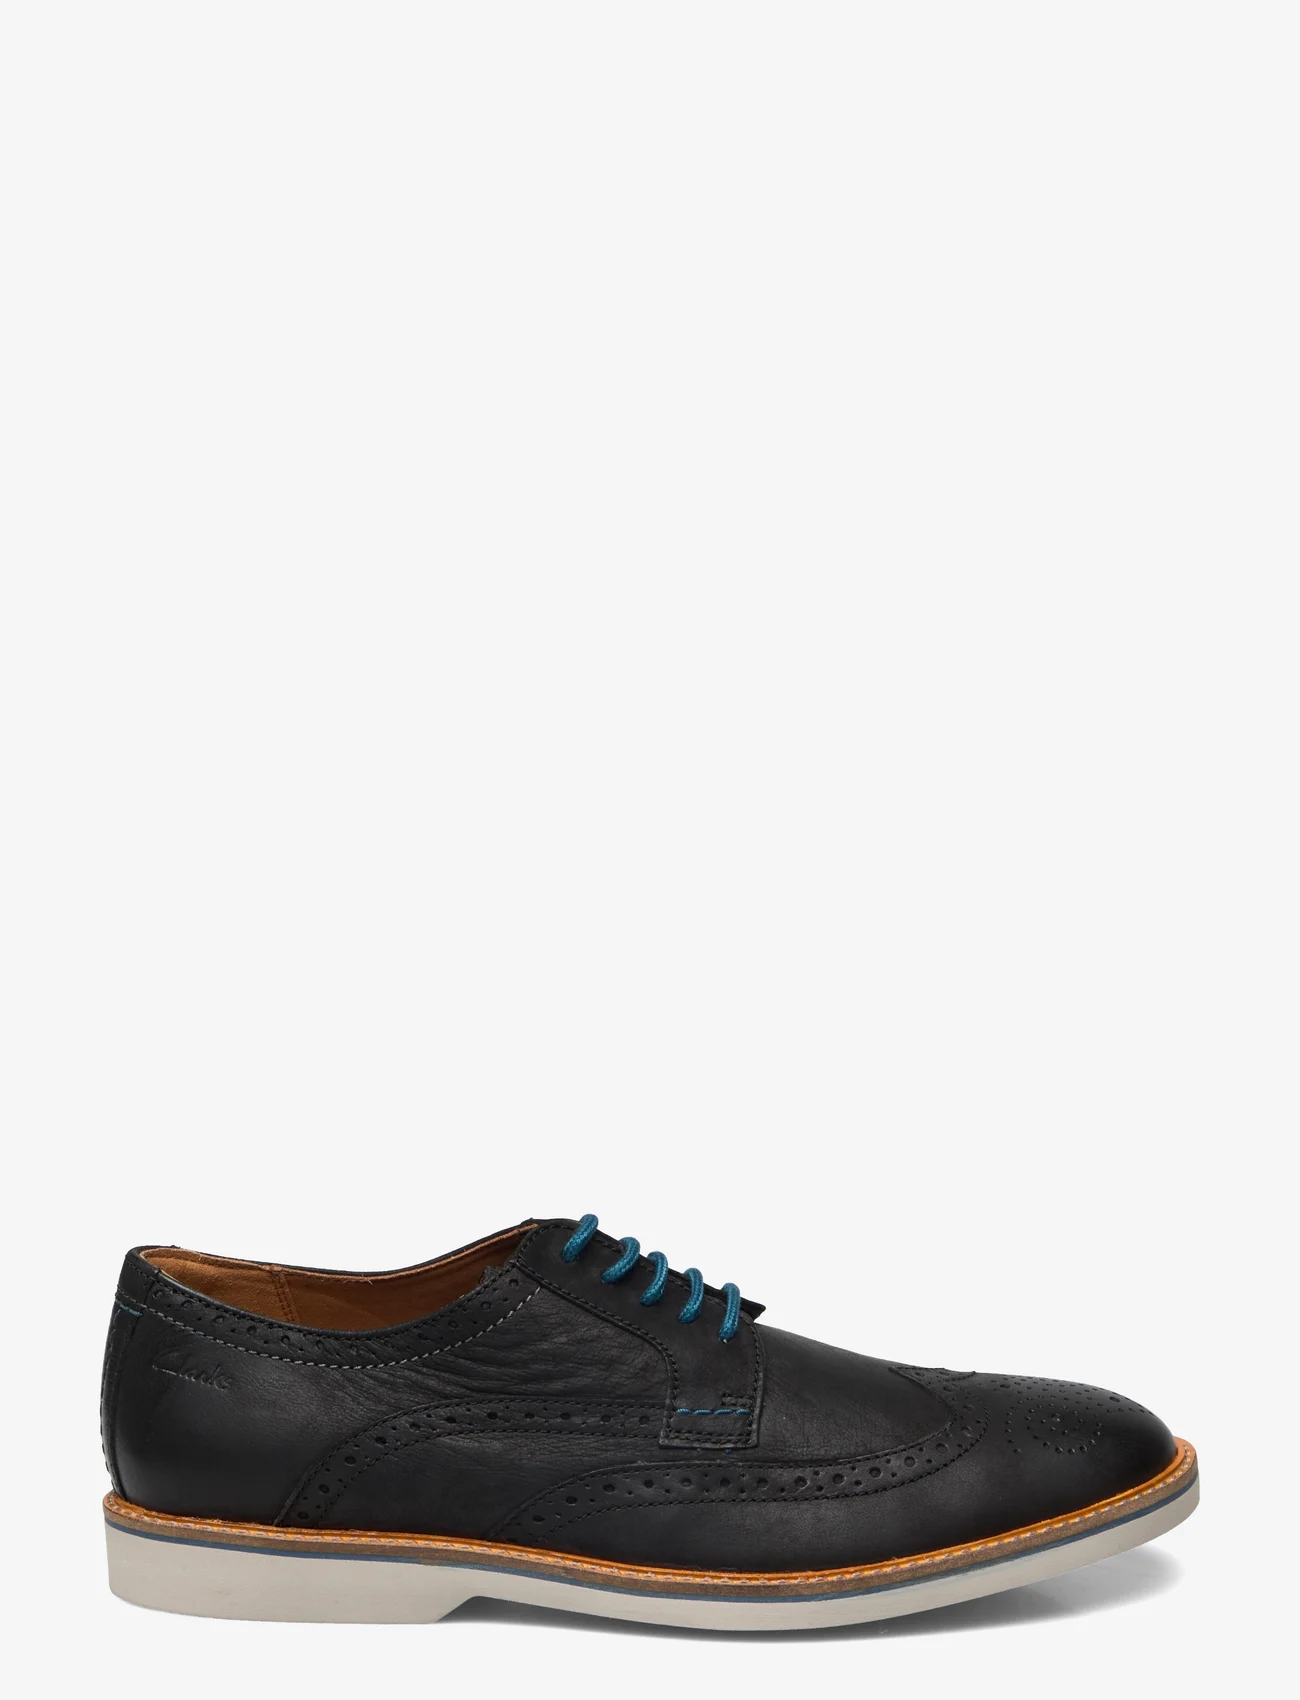 Clarks - AtticusLTLimit G - spring shoes - 1216 black leather - 1